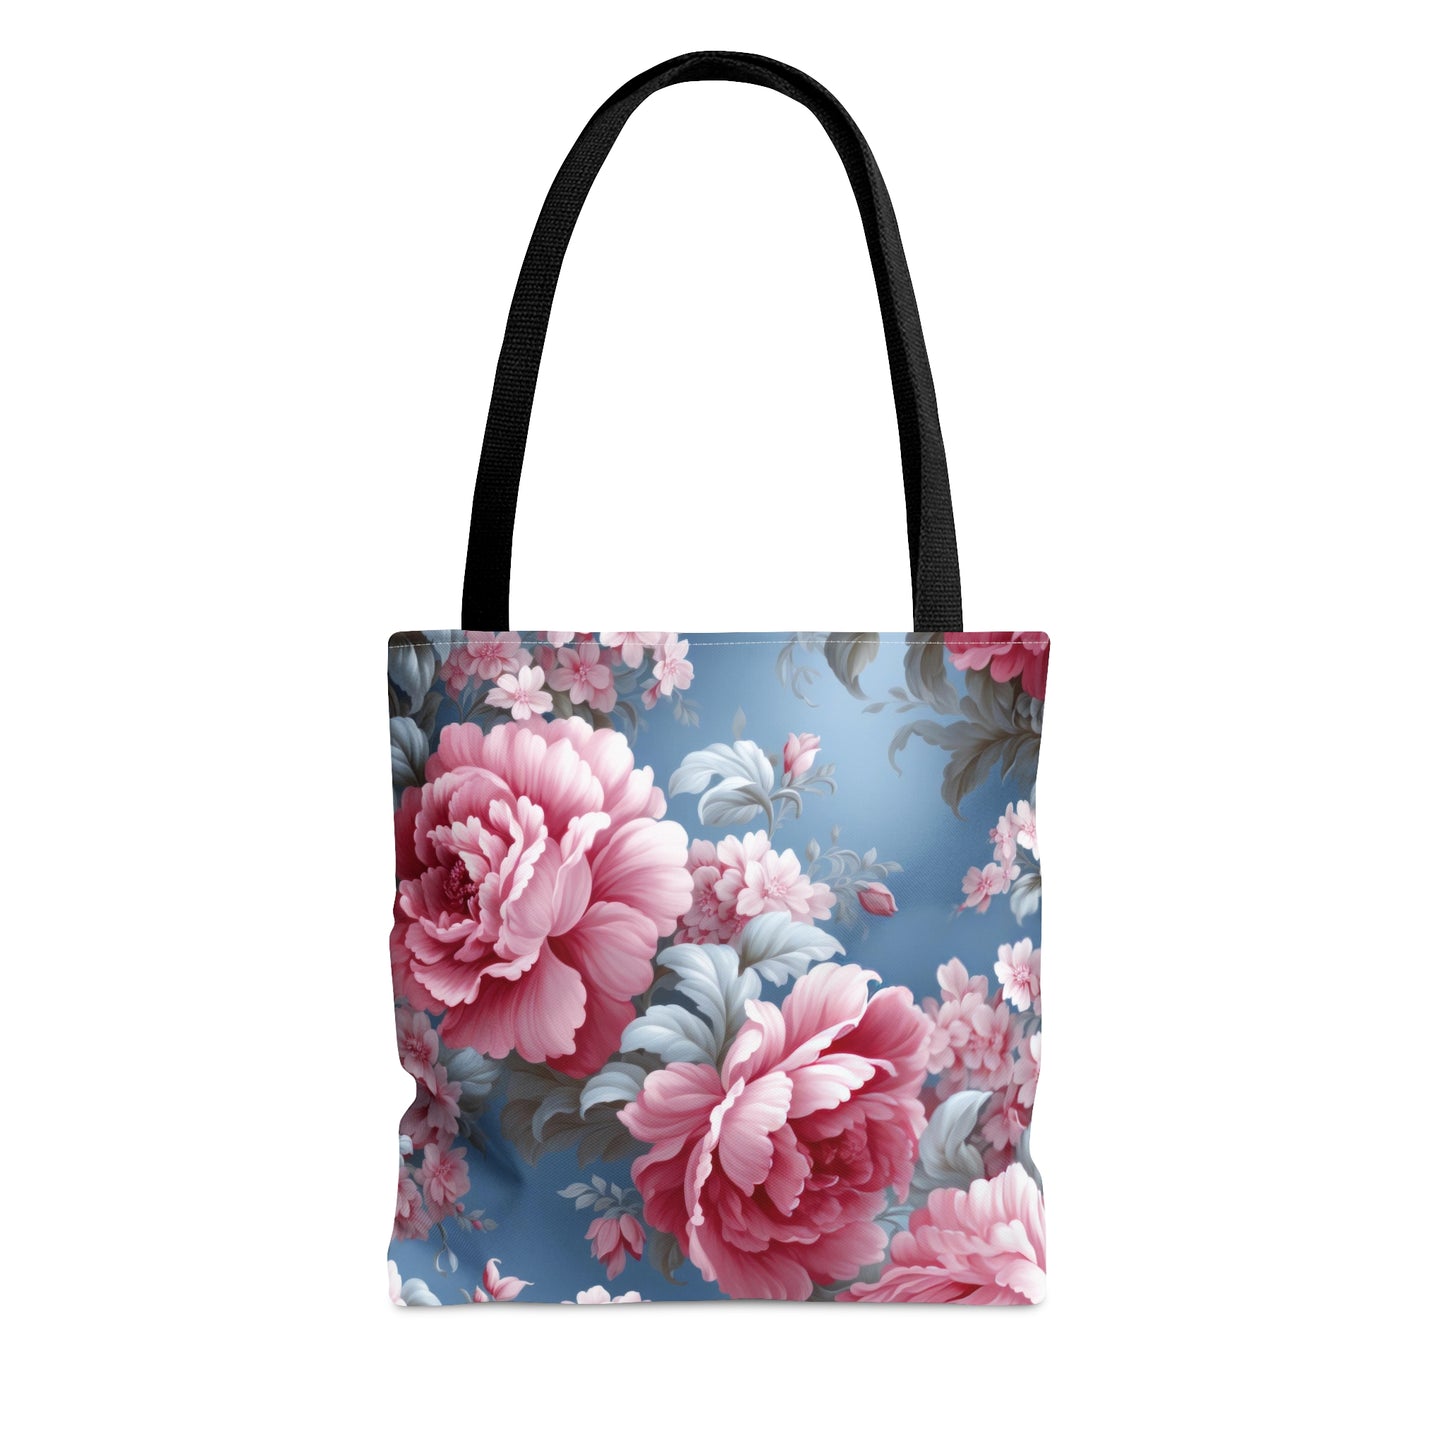 Elegance Floral Tote Bag